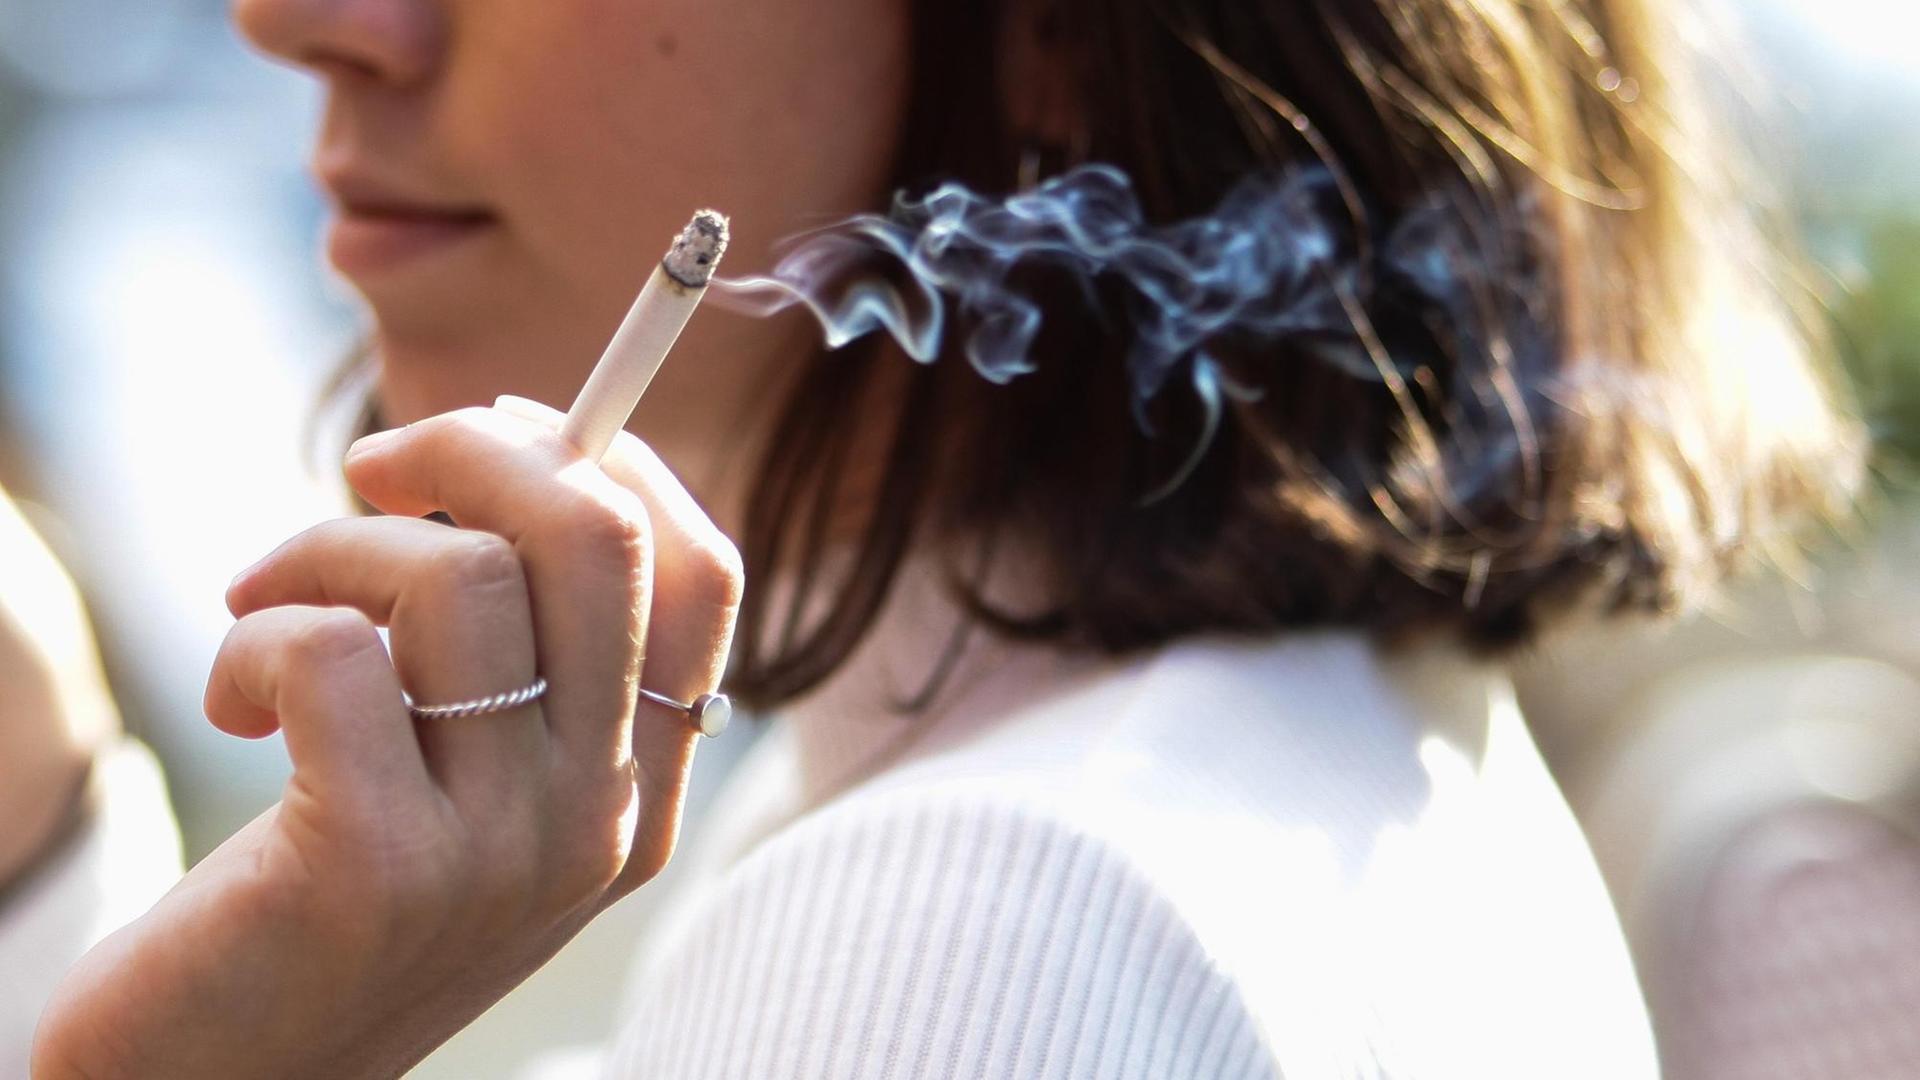 Großbritannien - Konservative Partei will künftigen Generationen das Rauchen verbieten